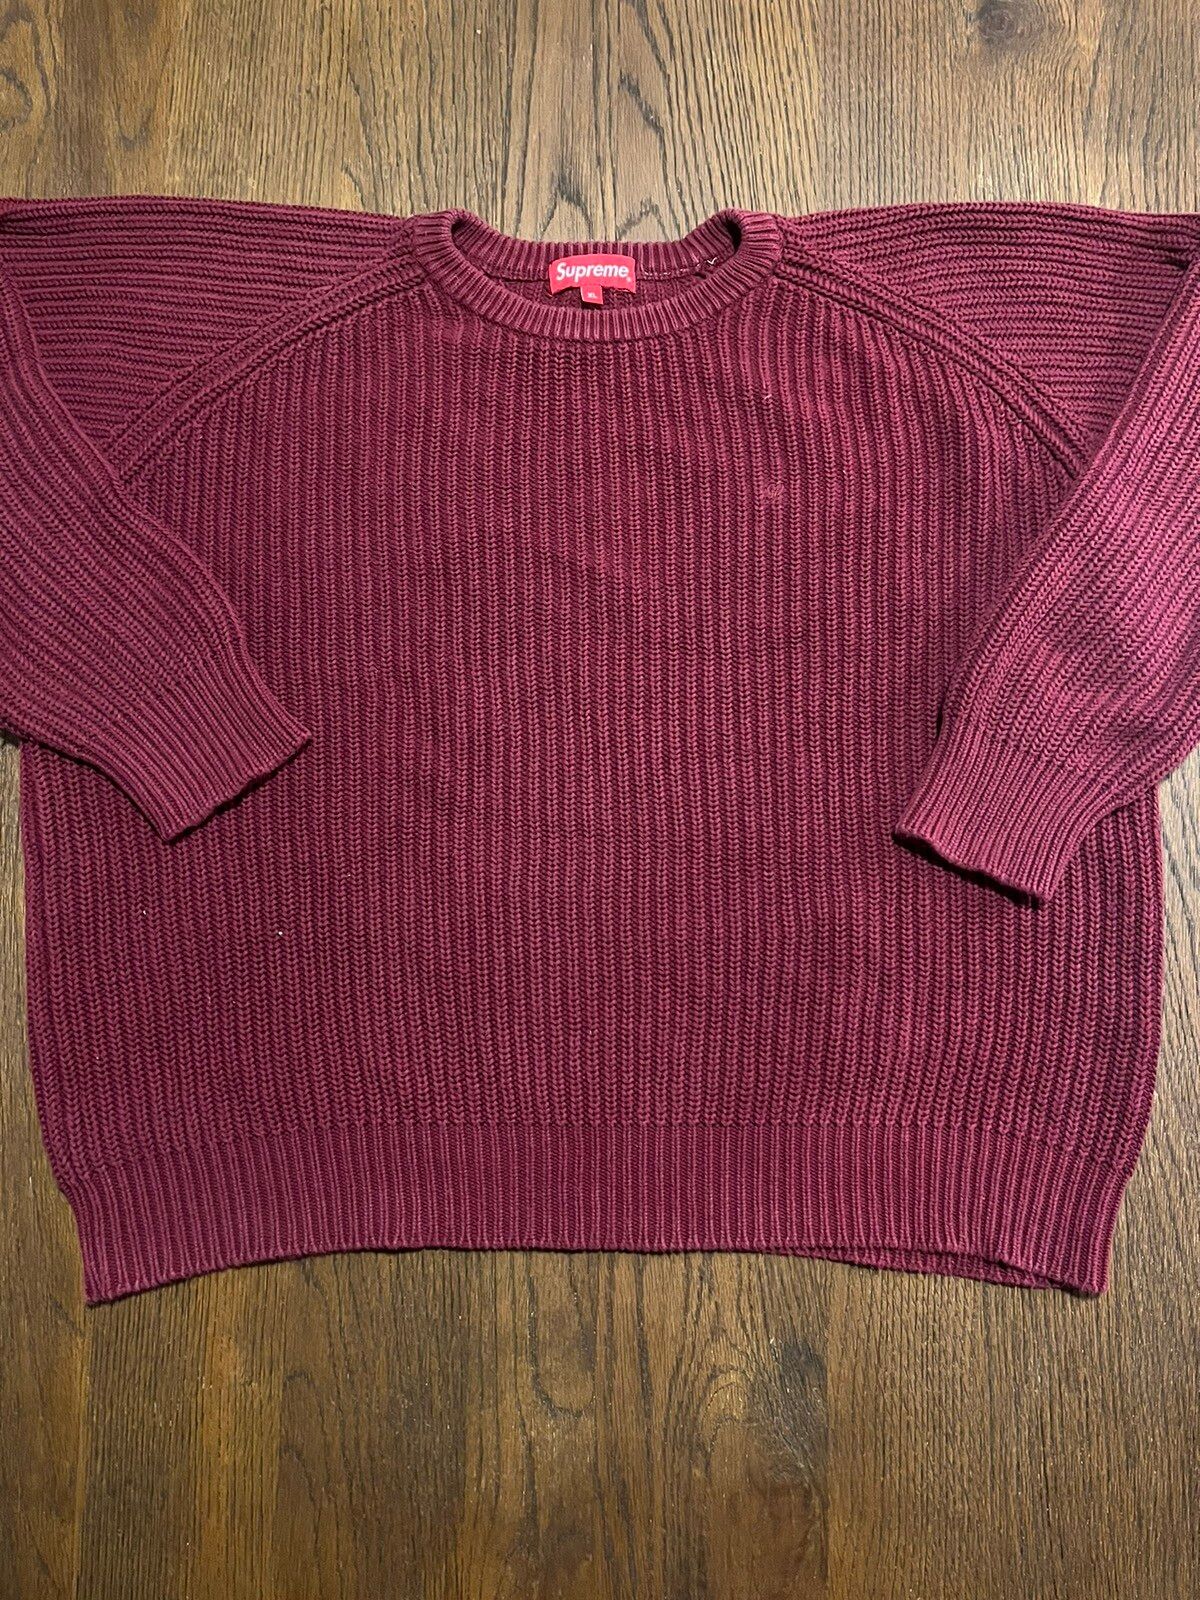 Supreme Supreme Rib Crewneck Sweater (F/W 14) | Grailed